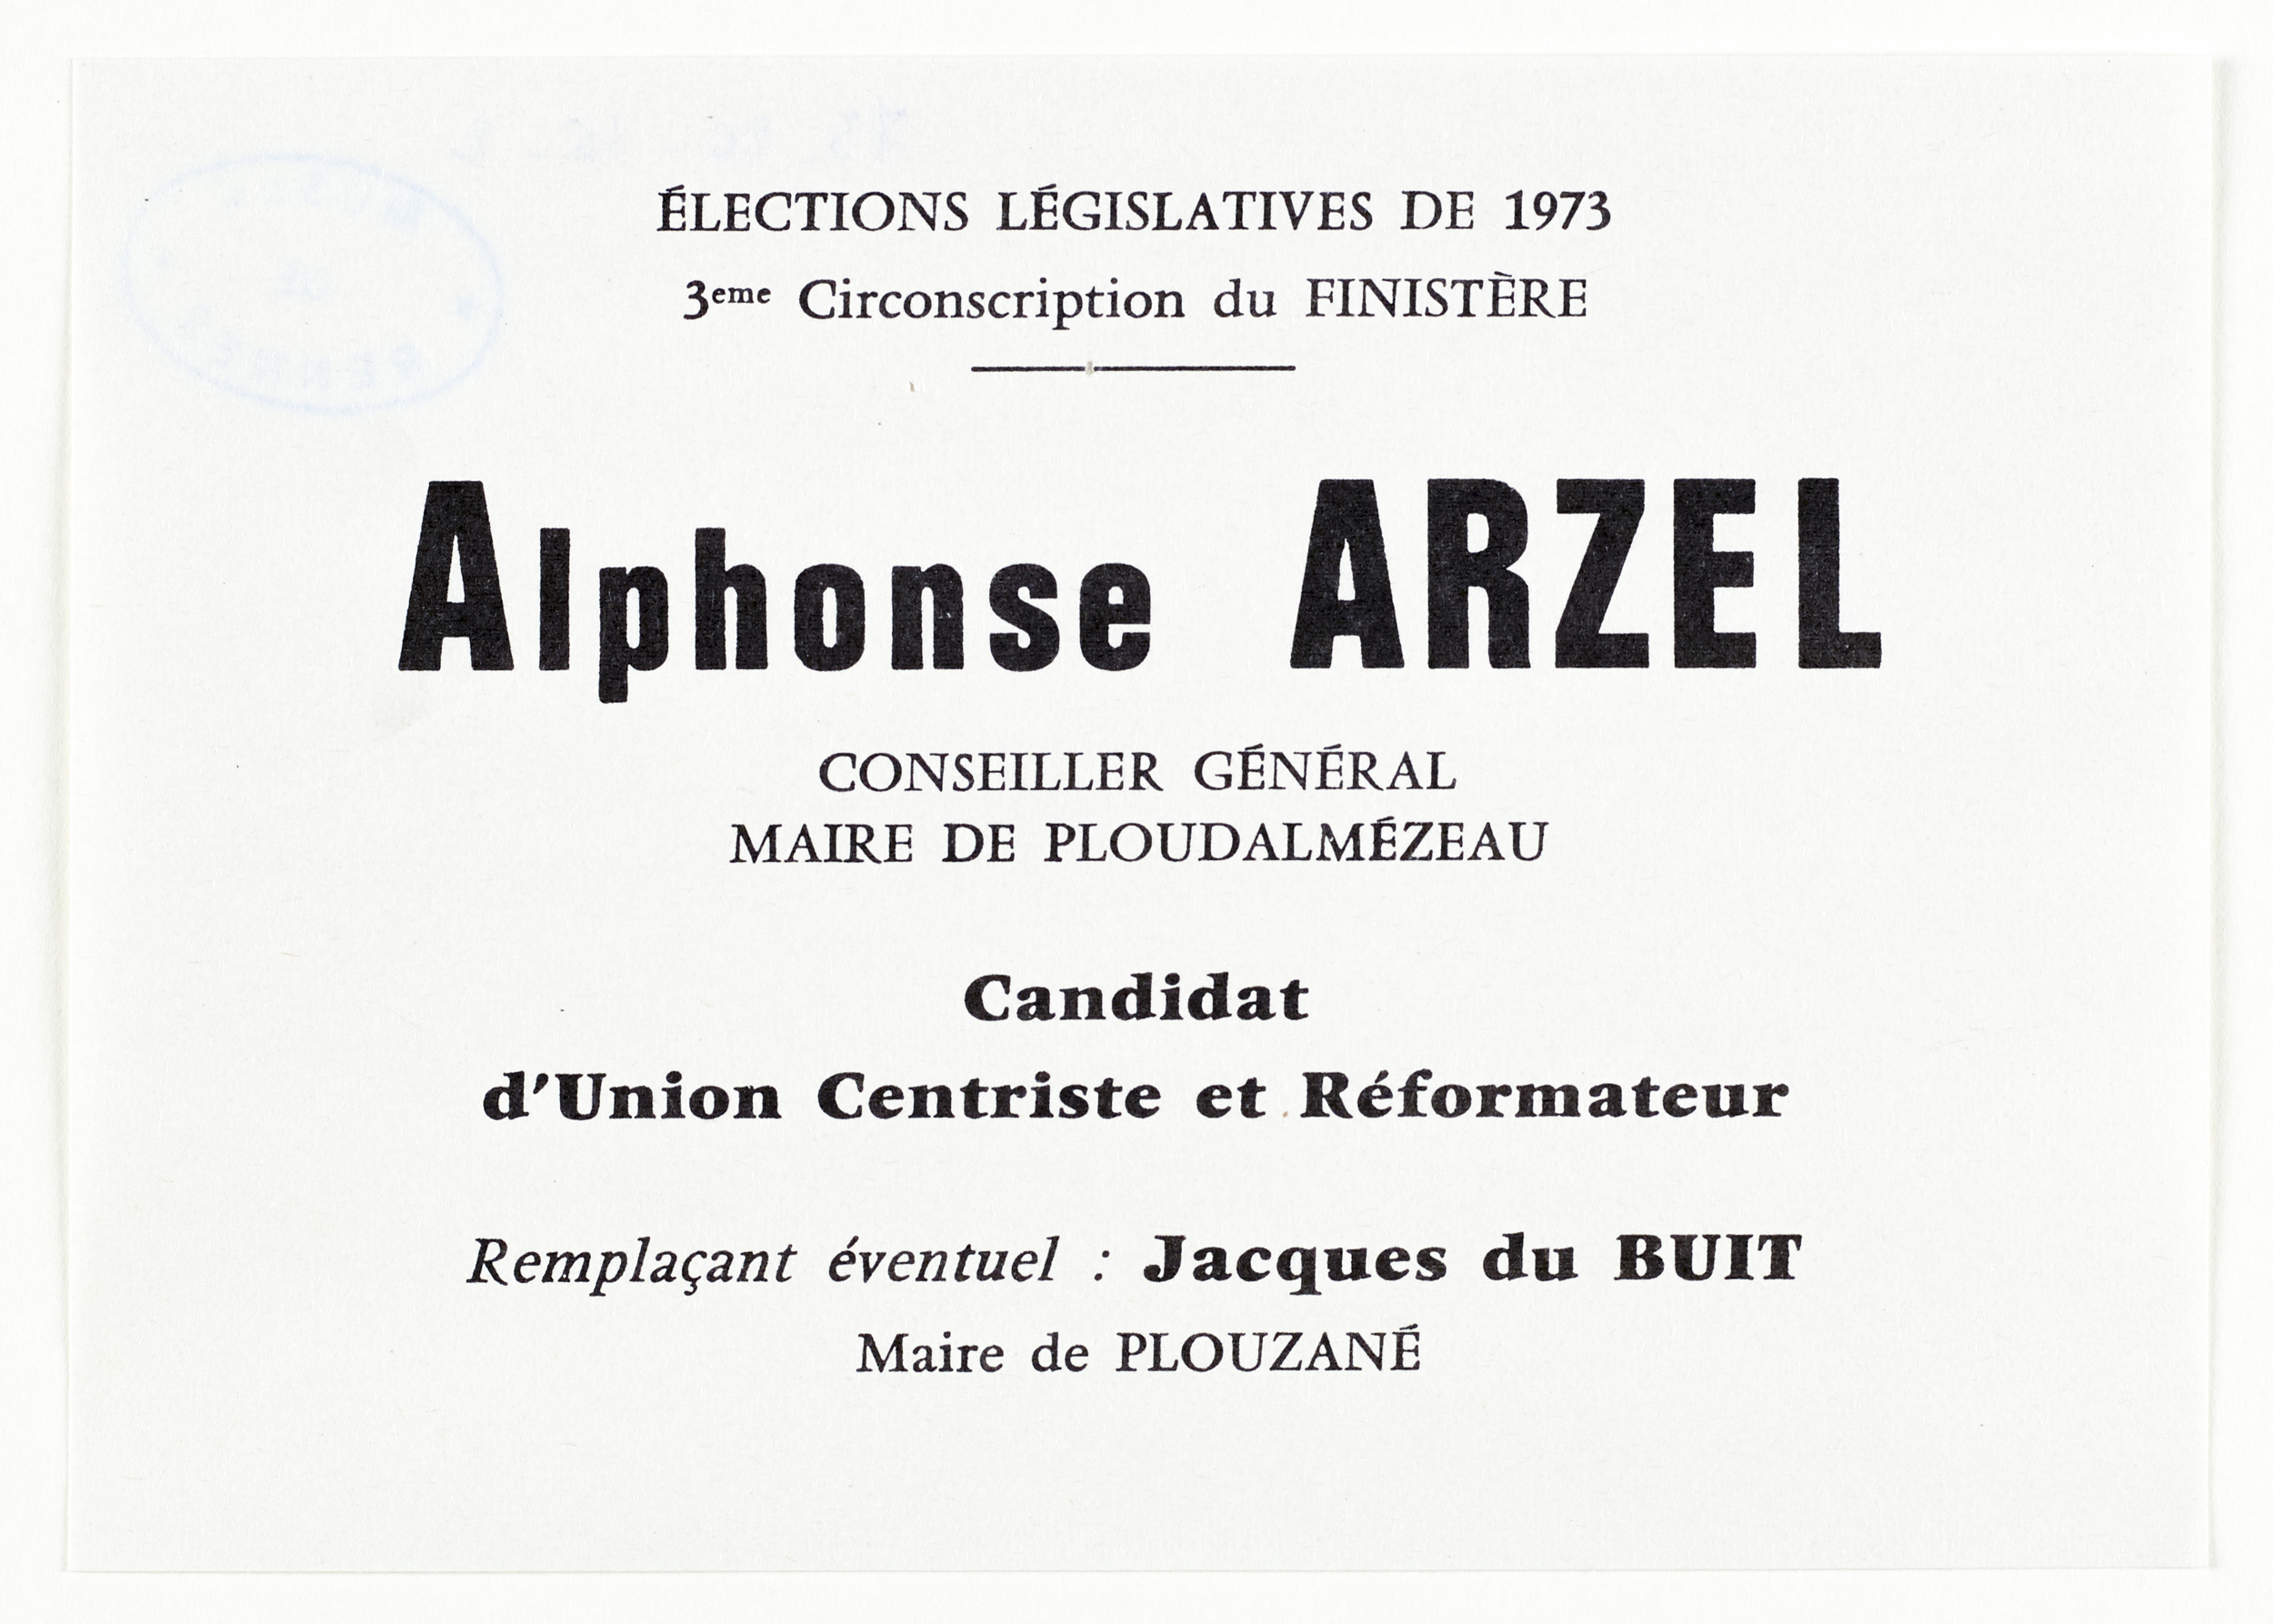 Bulletin de vote en faveur du candidat Alphonse Arzel lors des élections législatives de 1973. Source : collections du Musée de Bretagne. Numéro d'inventaire : 973.0026.16.2